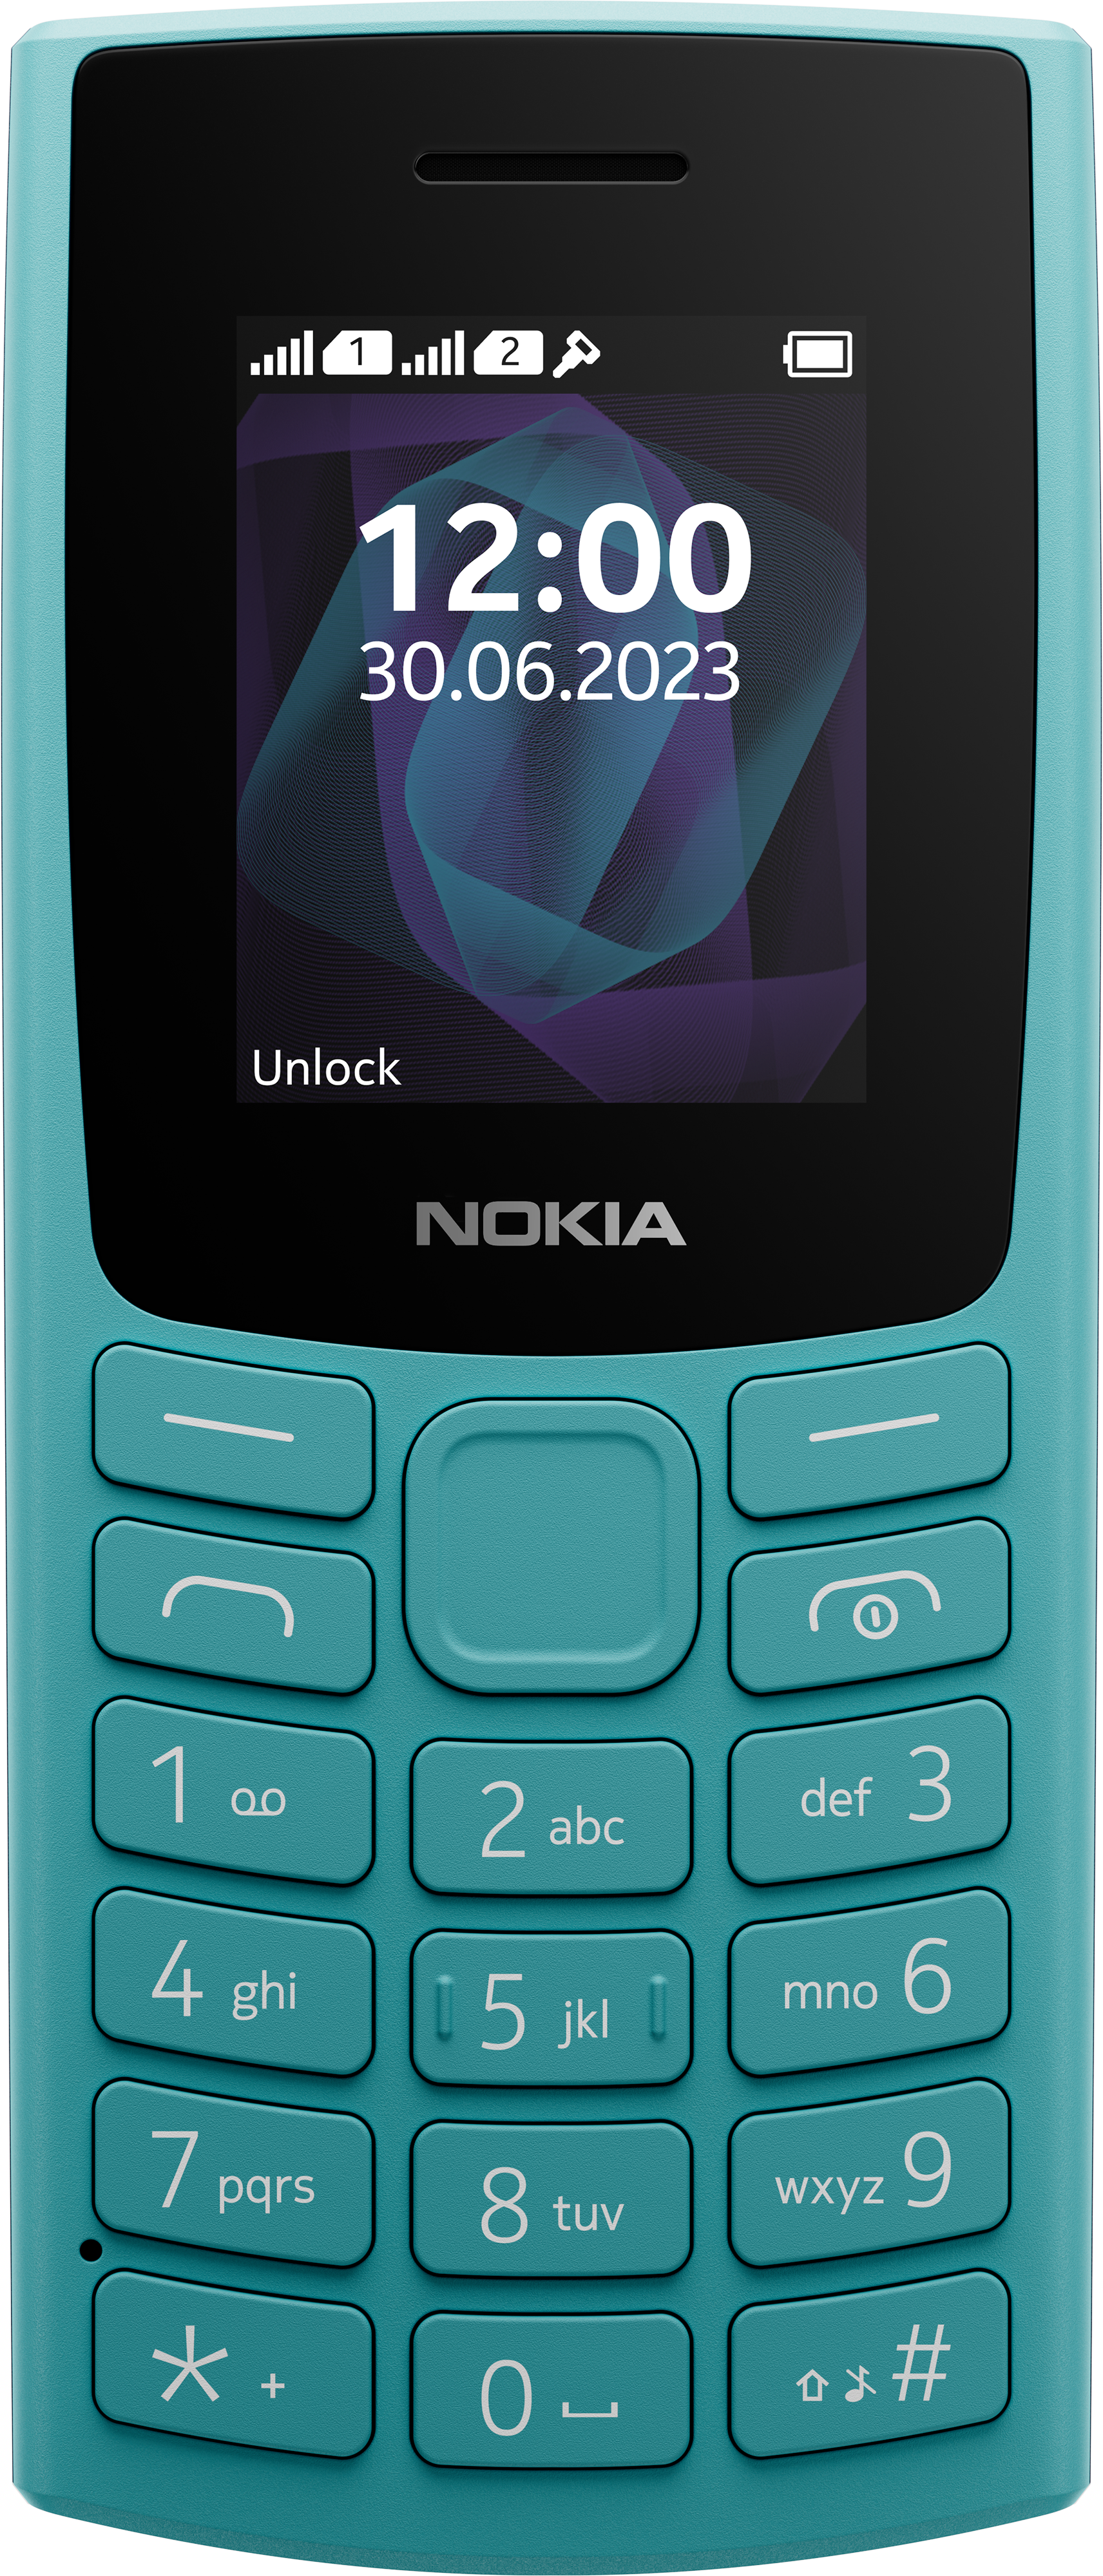 Nokia 105 Dual Sim - Advance Telecom